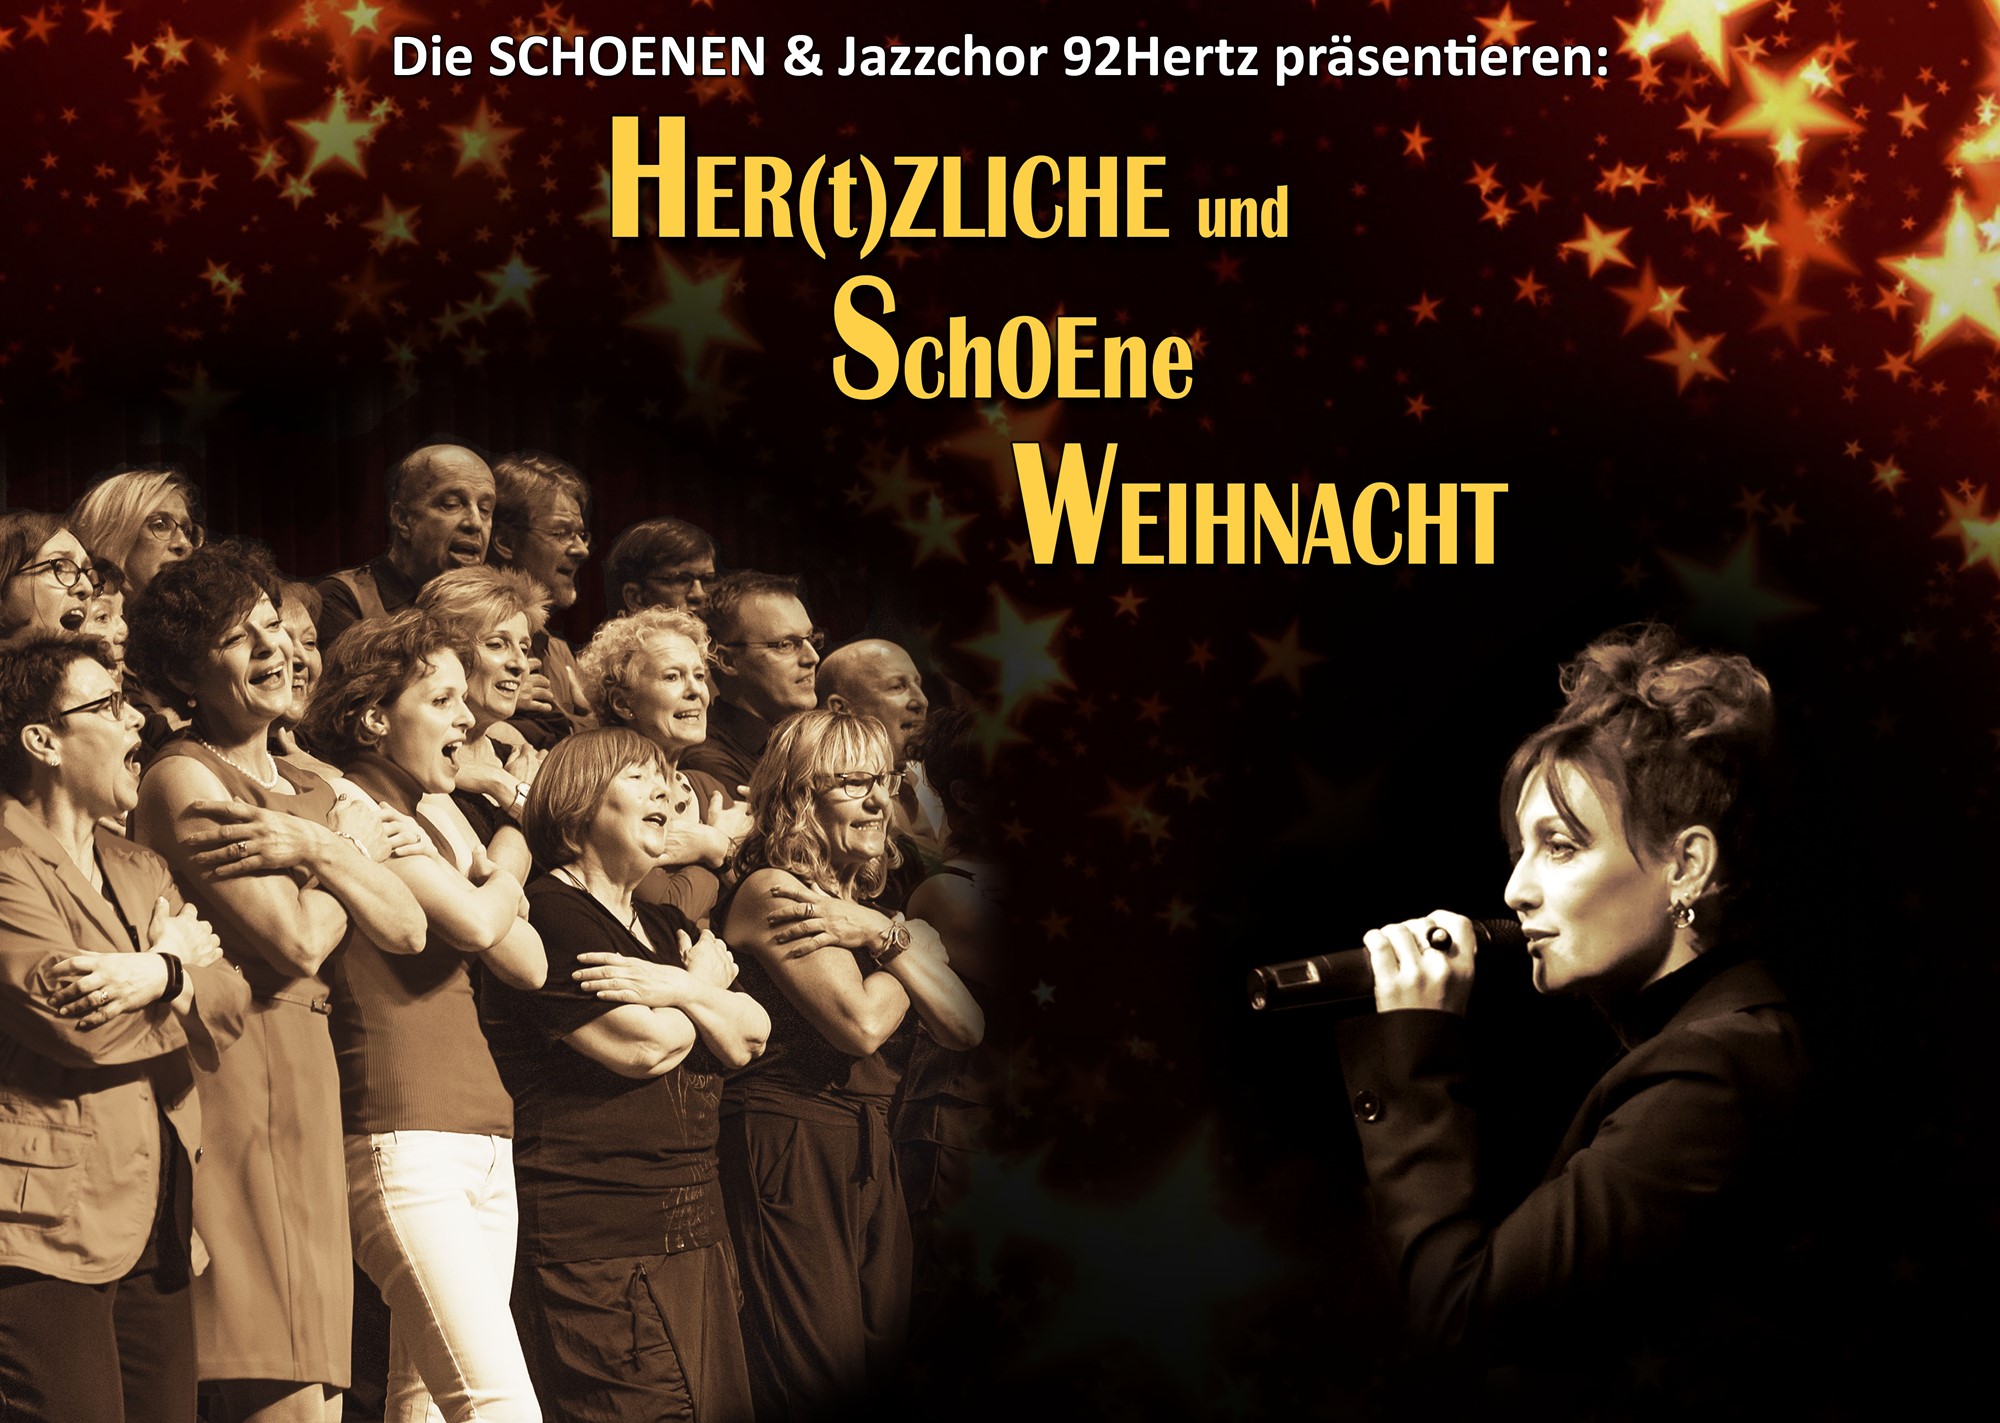 Die Schoenen + Jazzchor 92Hertz